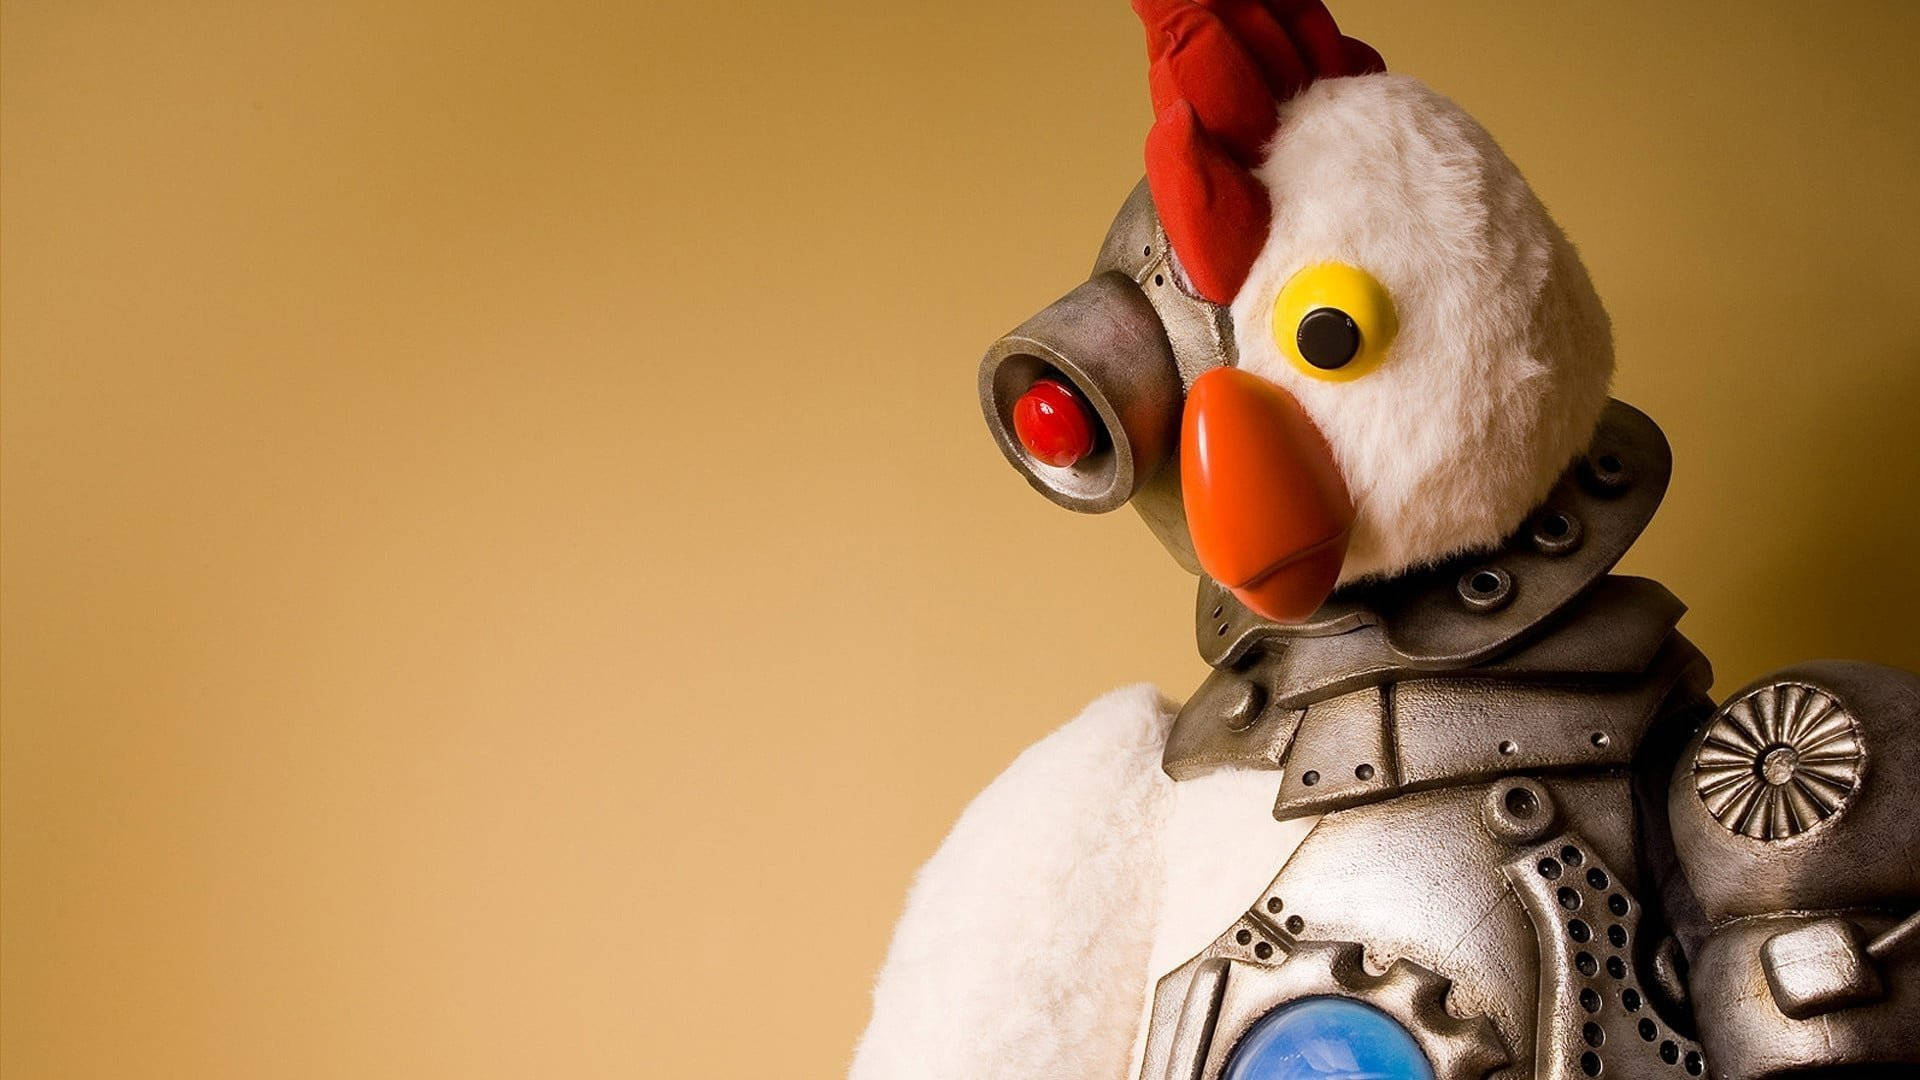 Robot Chicken Toy